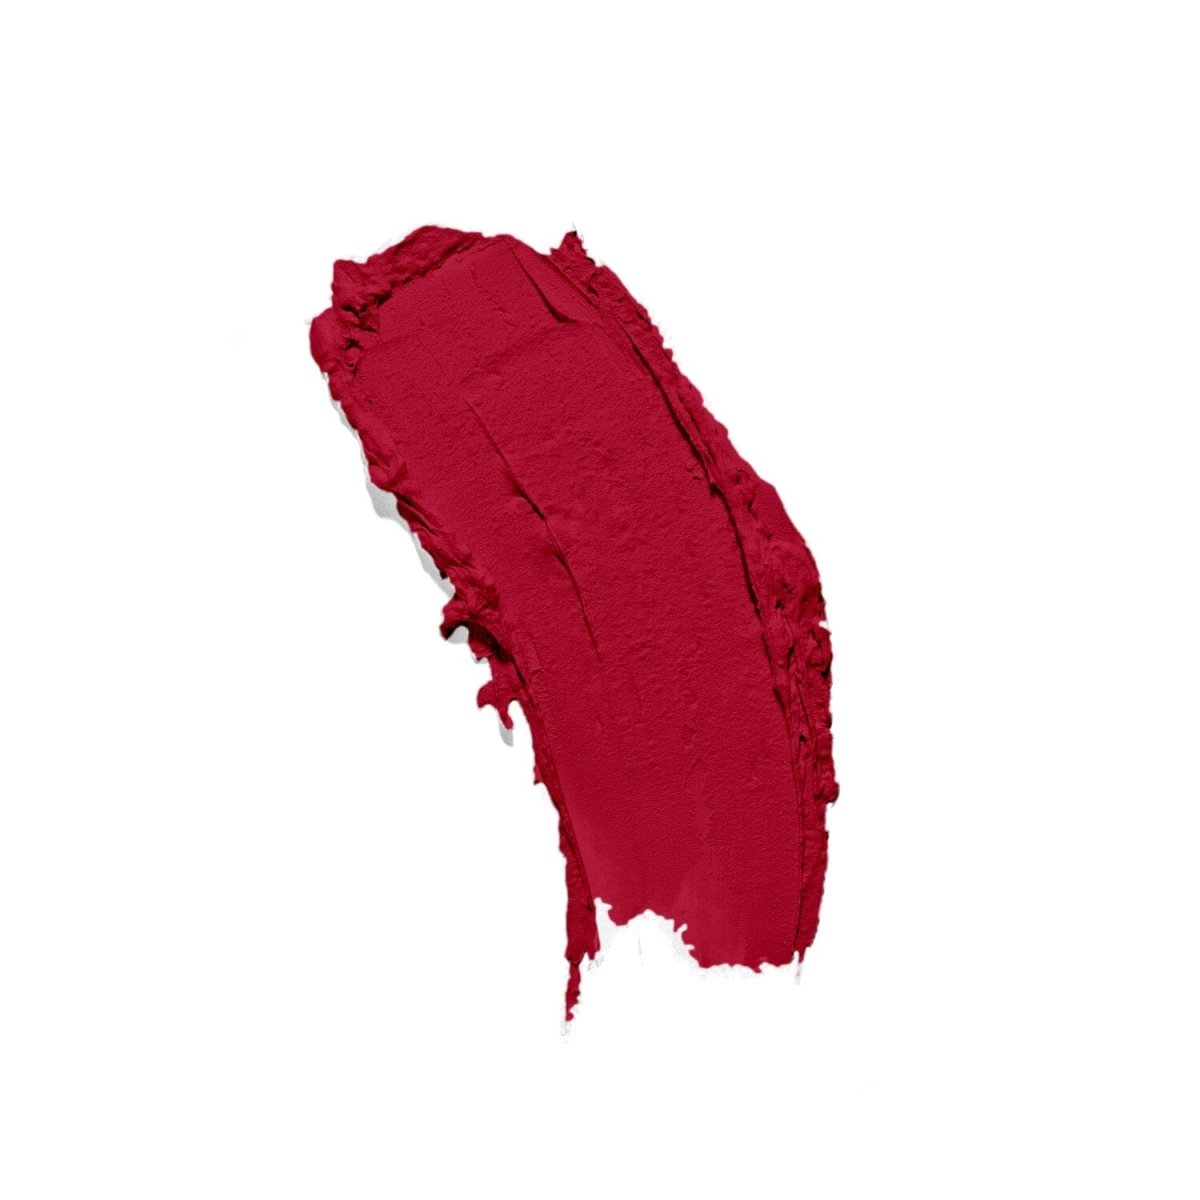 Matte red cruelty-free lipstick on a pristine white backdrop